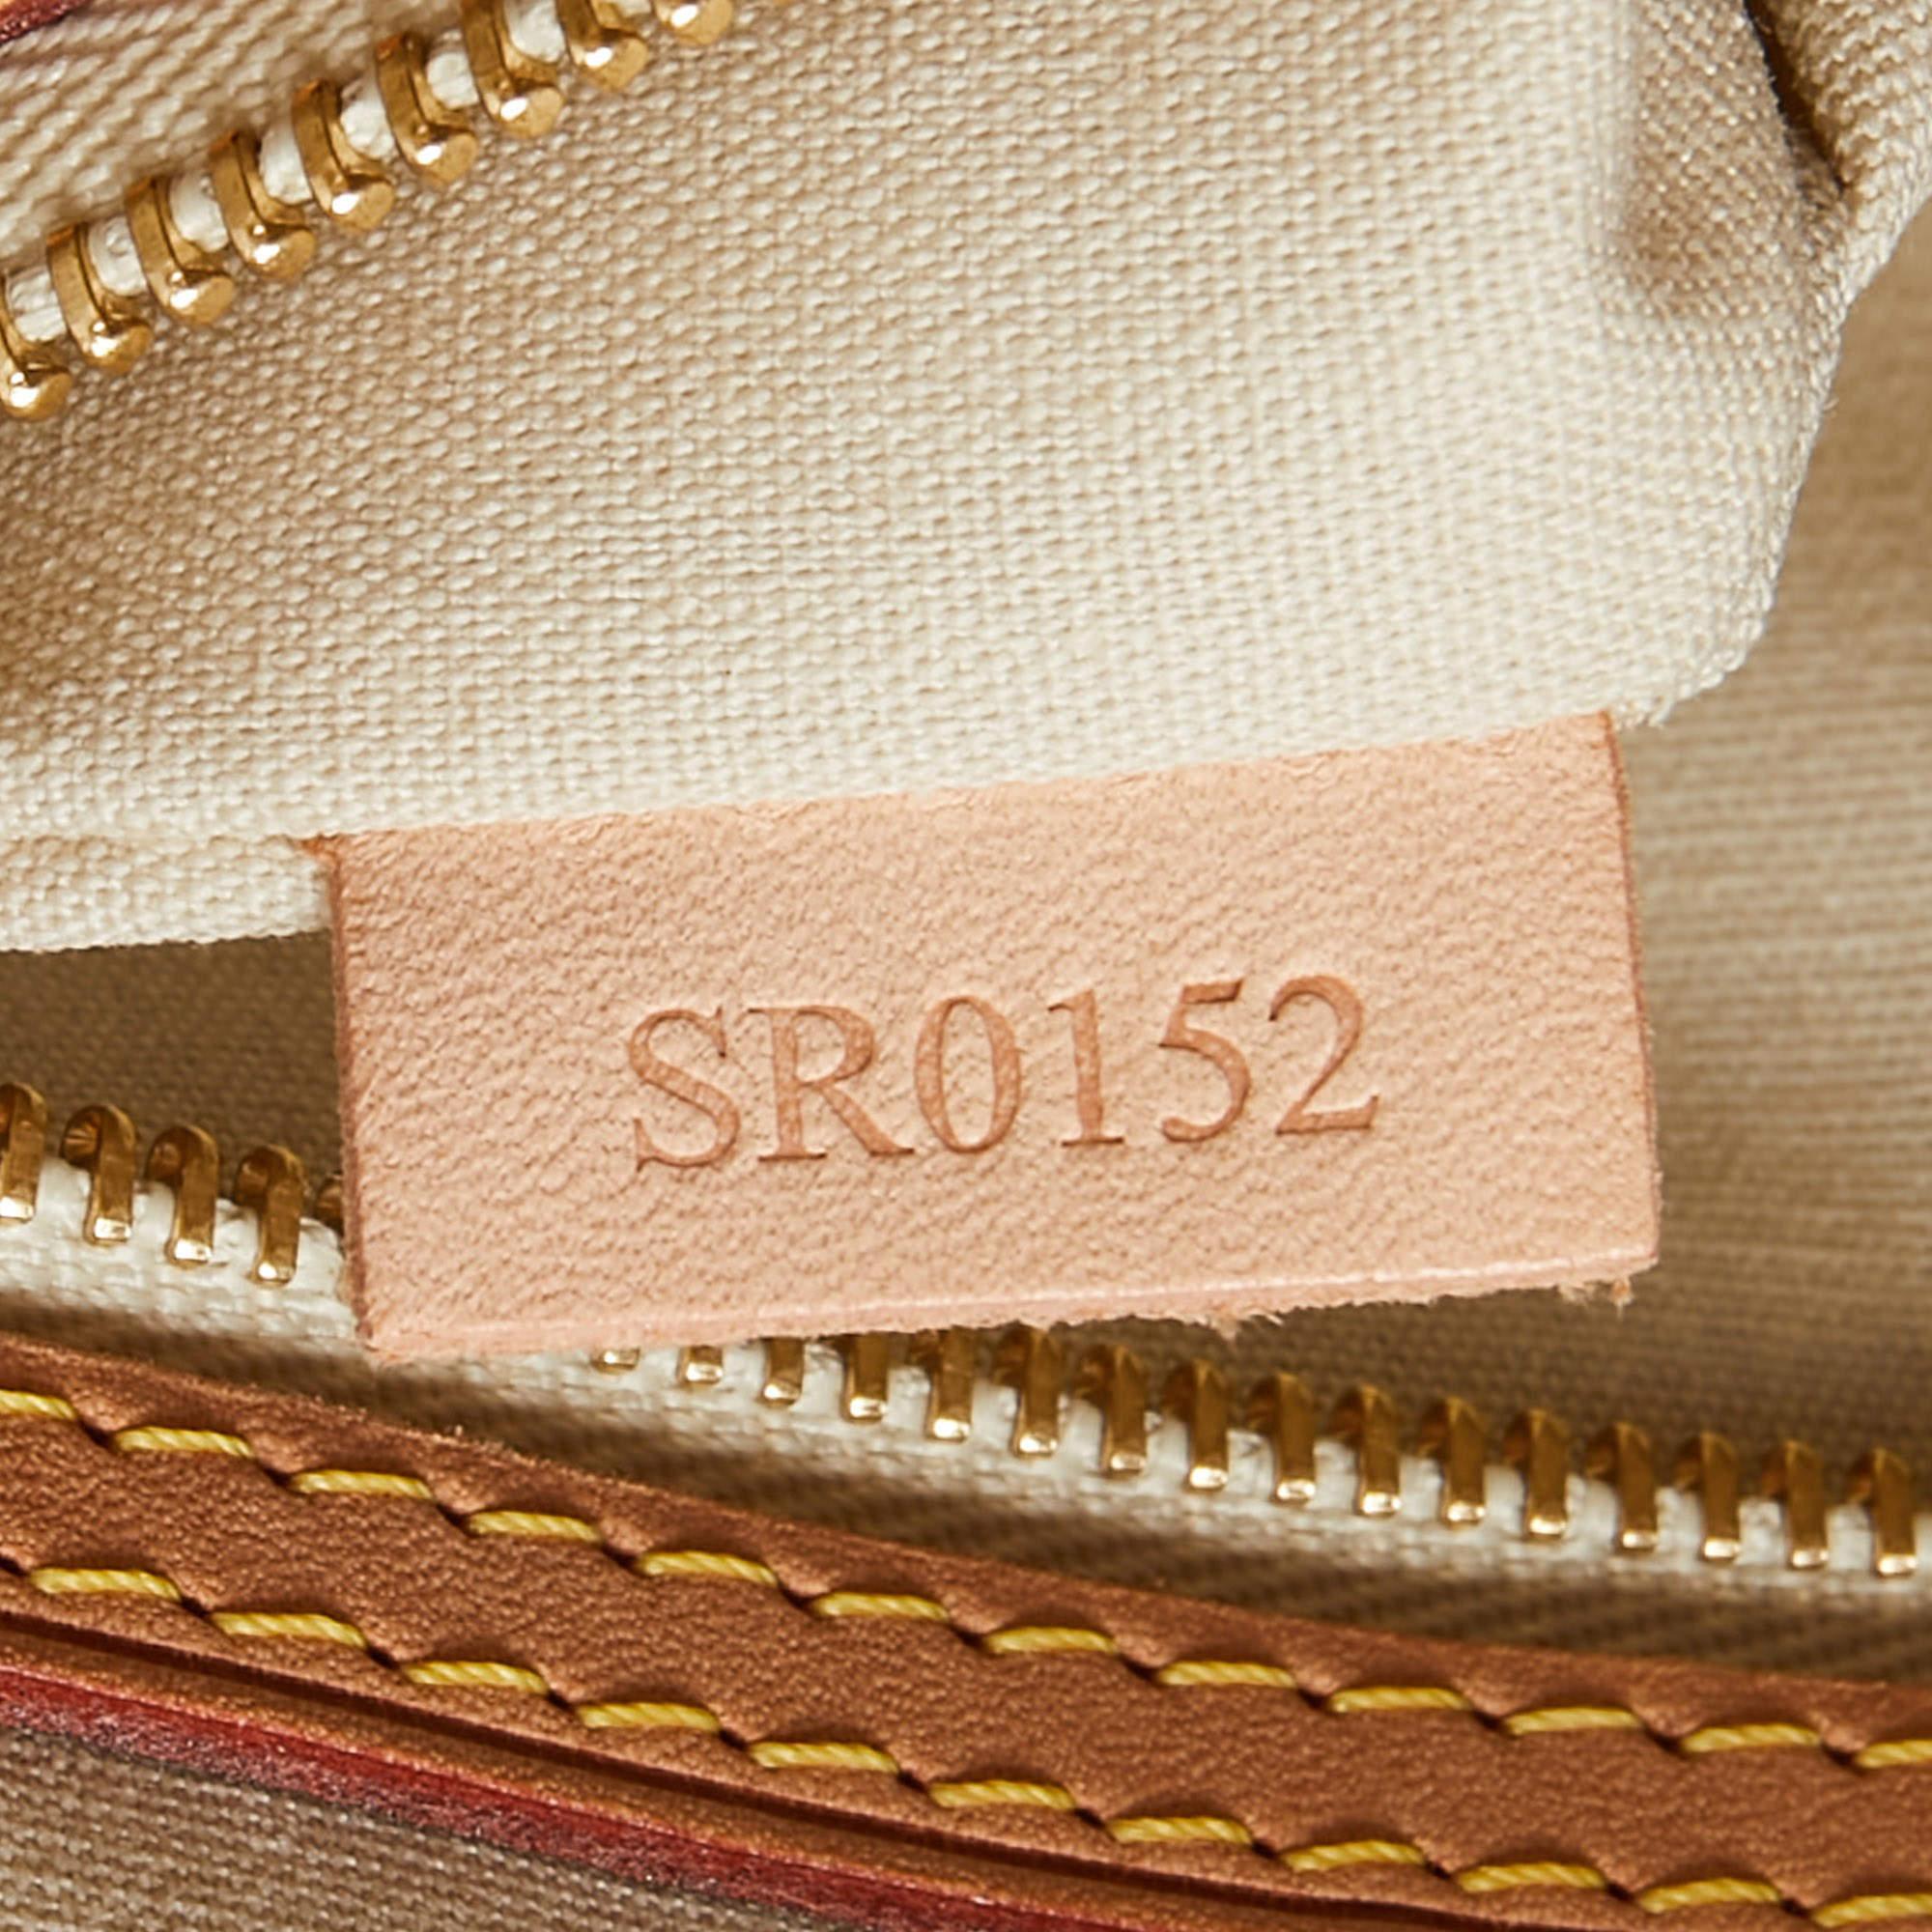 Louis Vuitton Blanc Corail Monogram Vernis Brea GM Bag For Sale 9